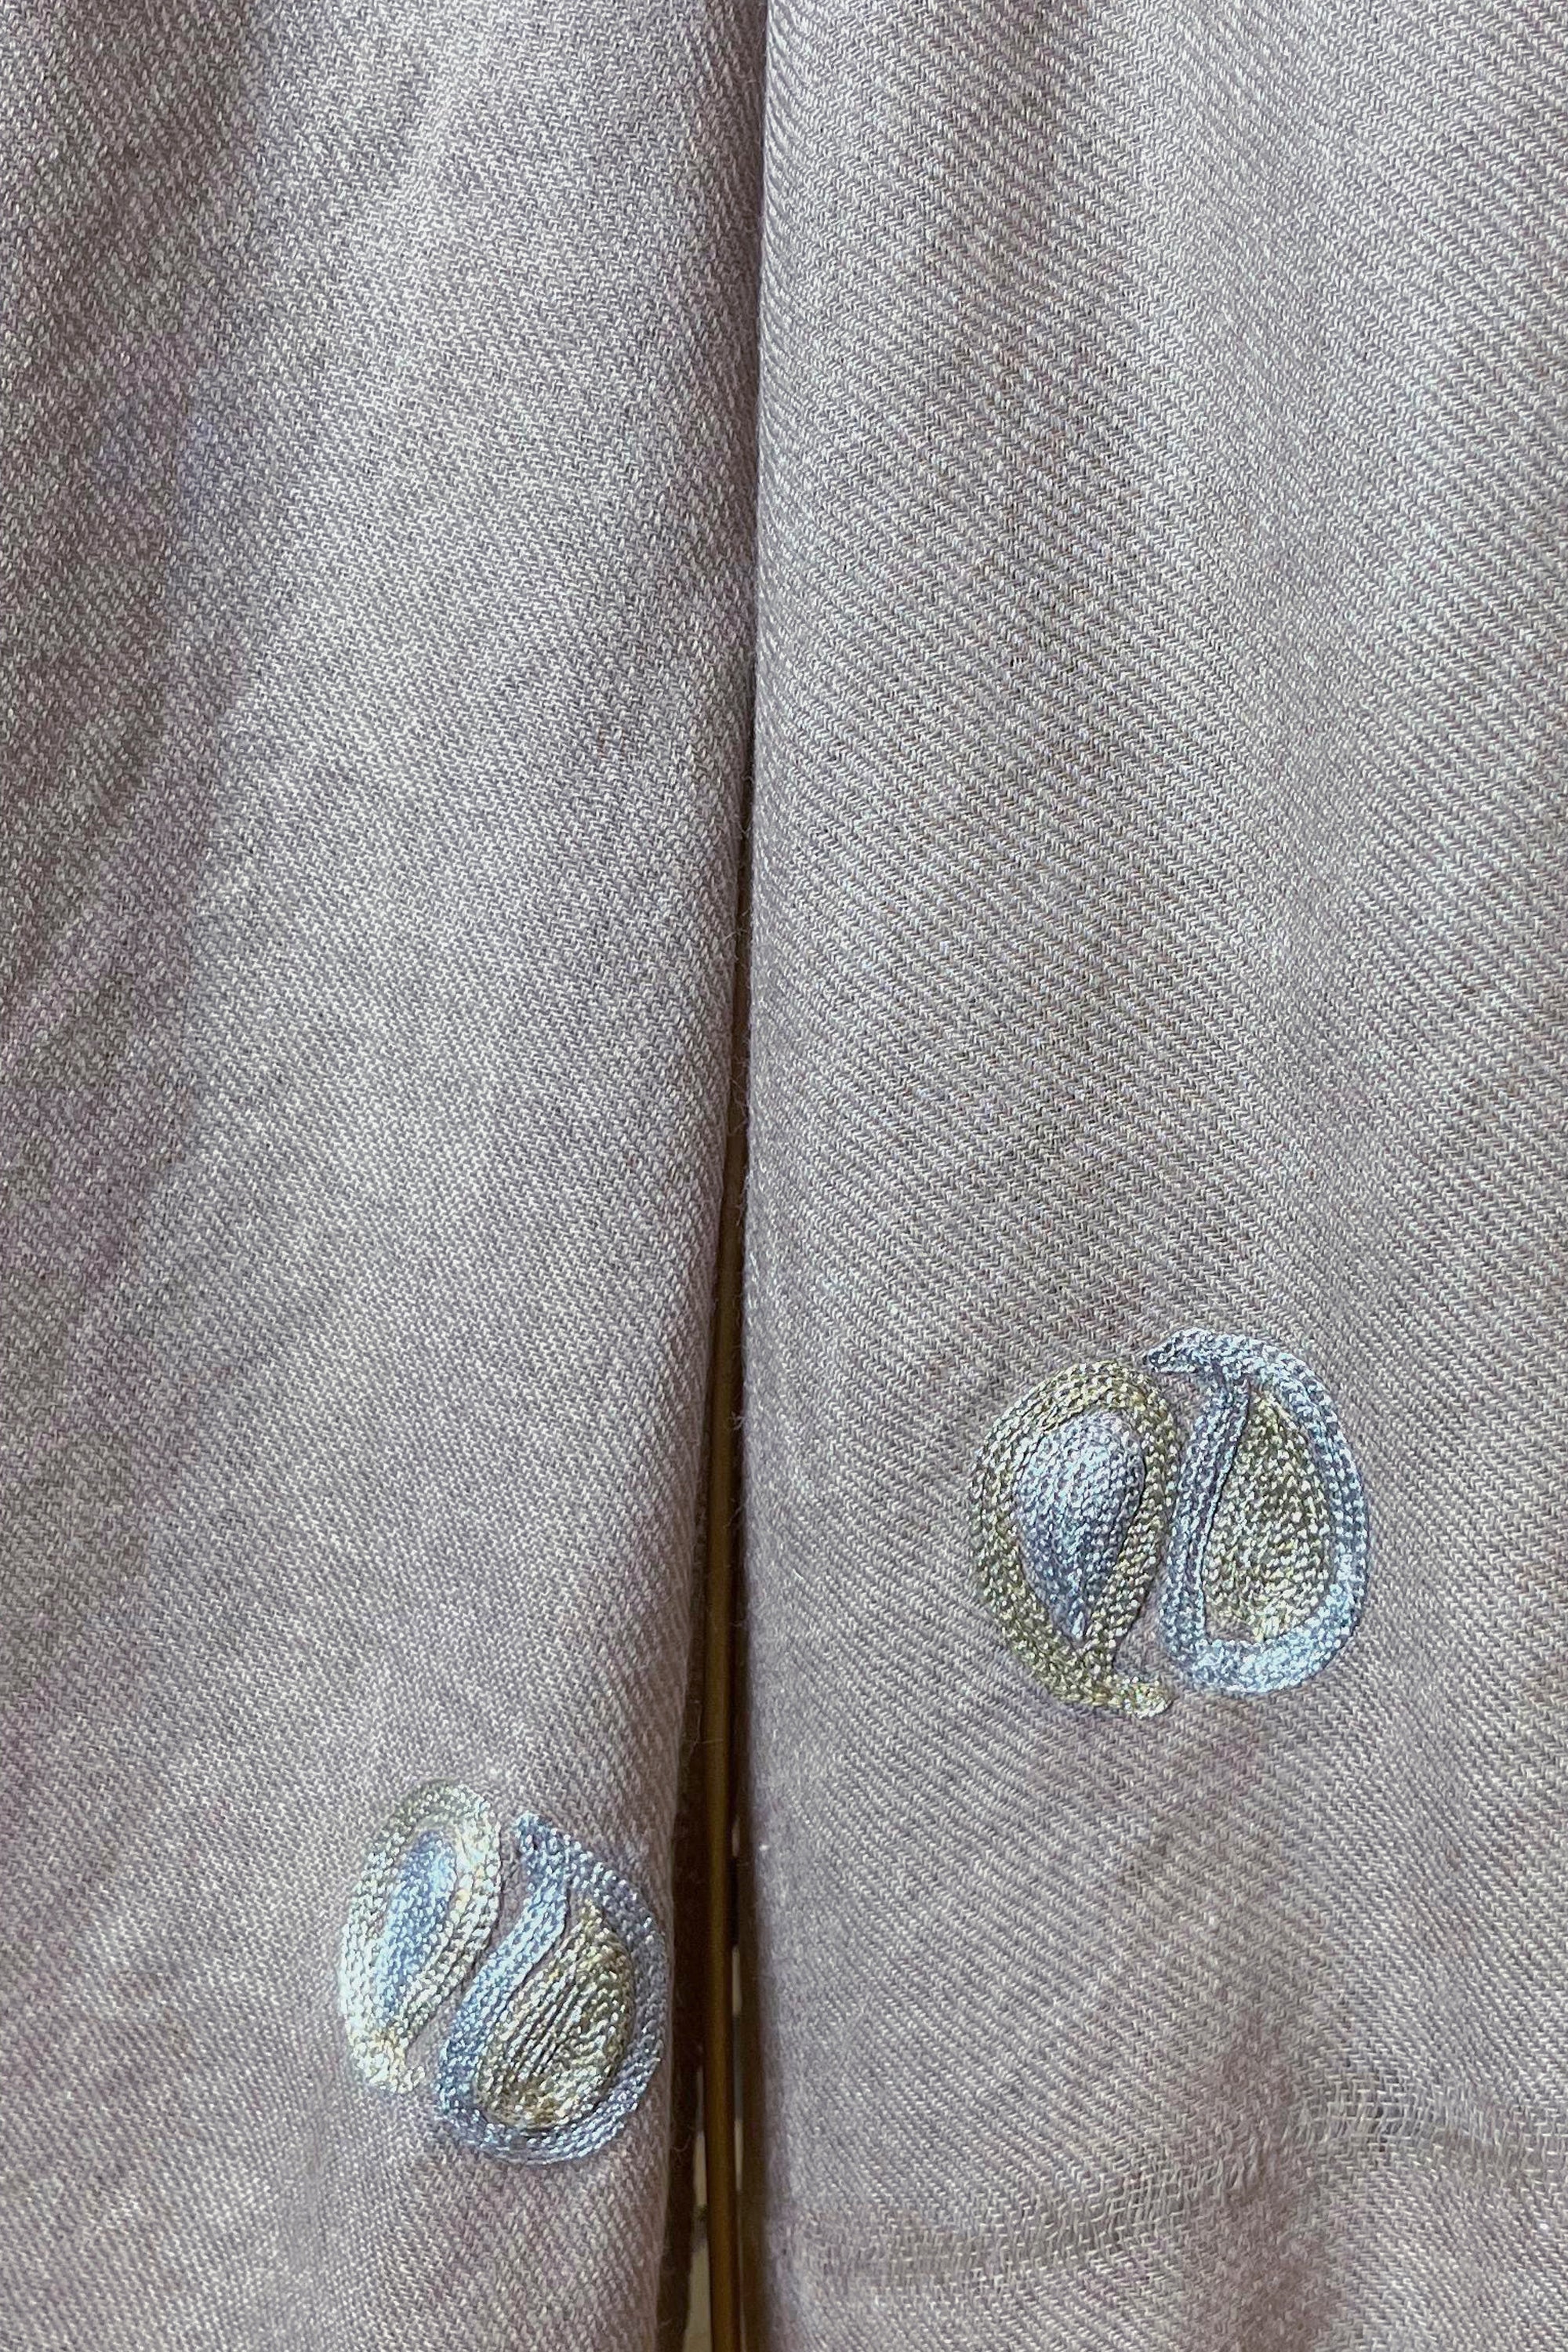 Ambi aur Kaeri in Pashmina (Grey)